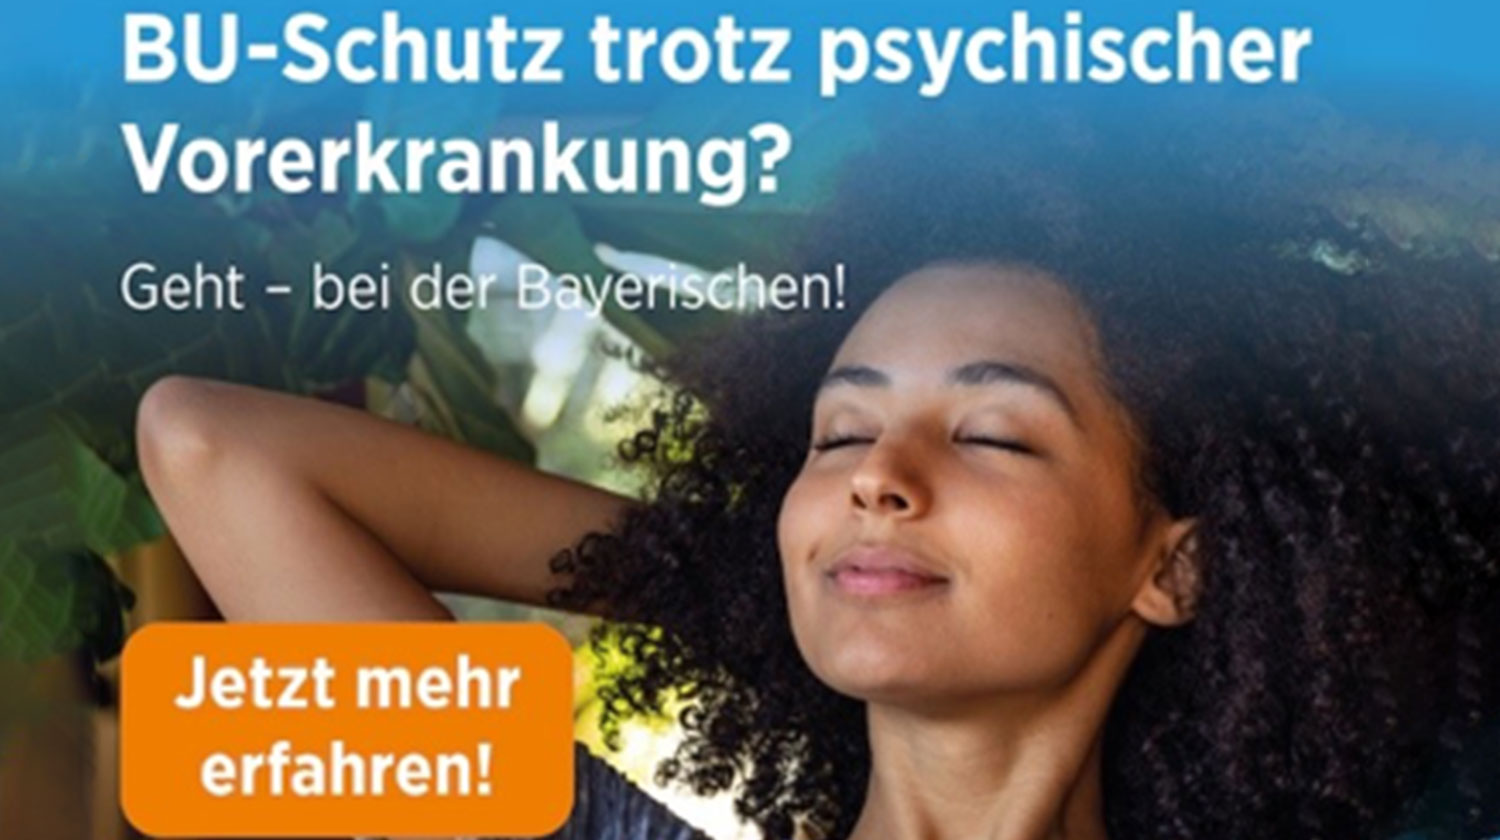 BU-Schutz trotz psychischer Vorerkrankung? Geht – bei der Bayerischen!